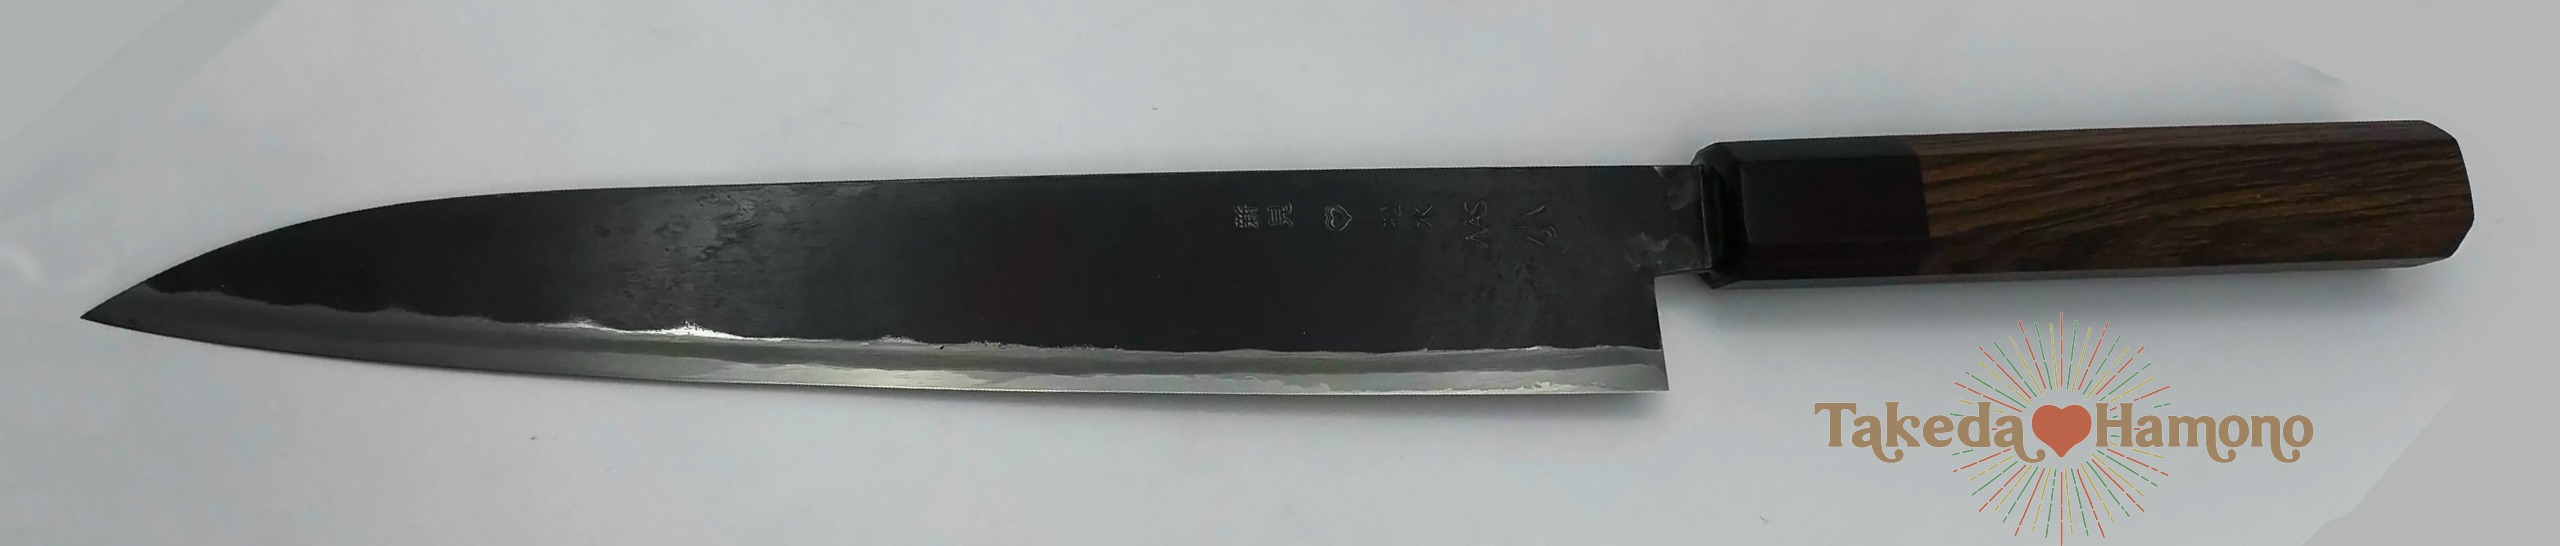 takeda couteau japonais